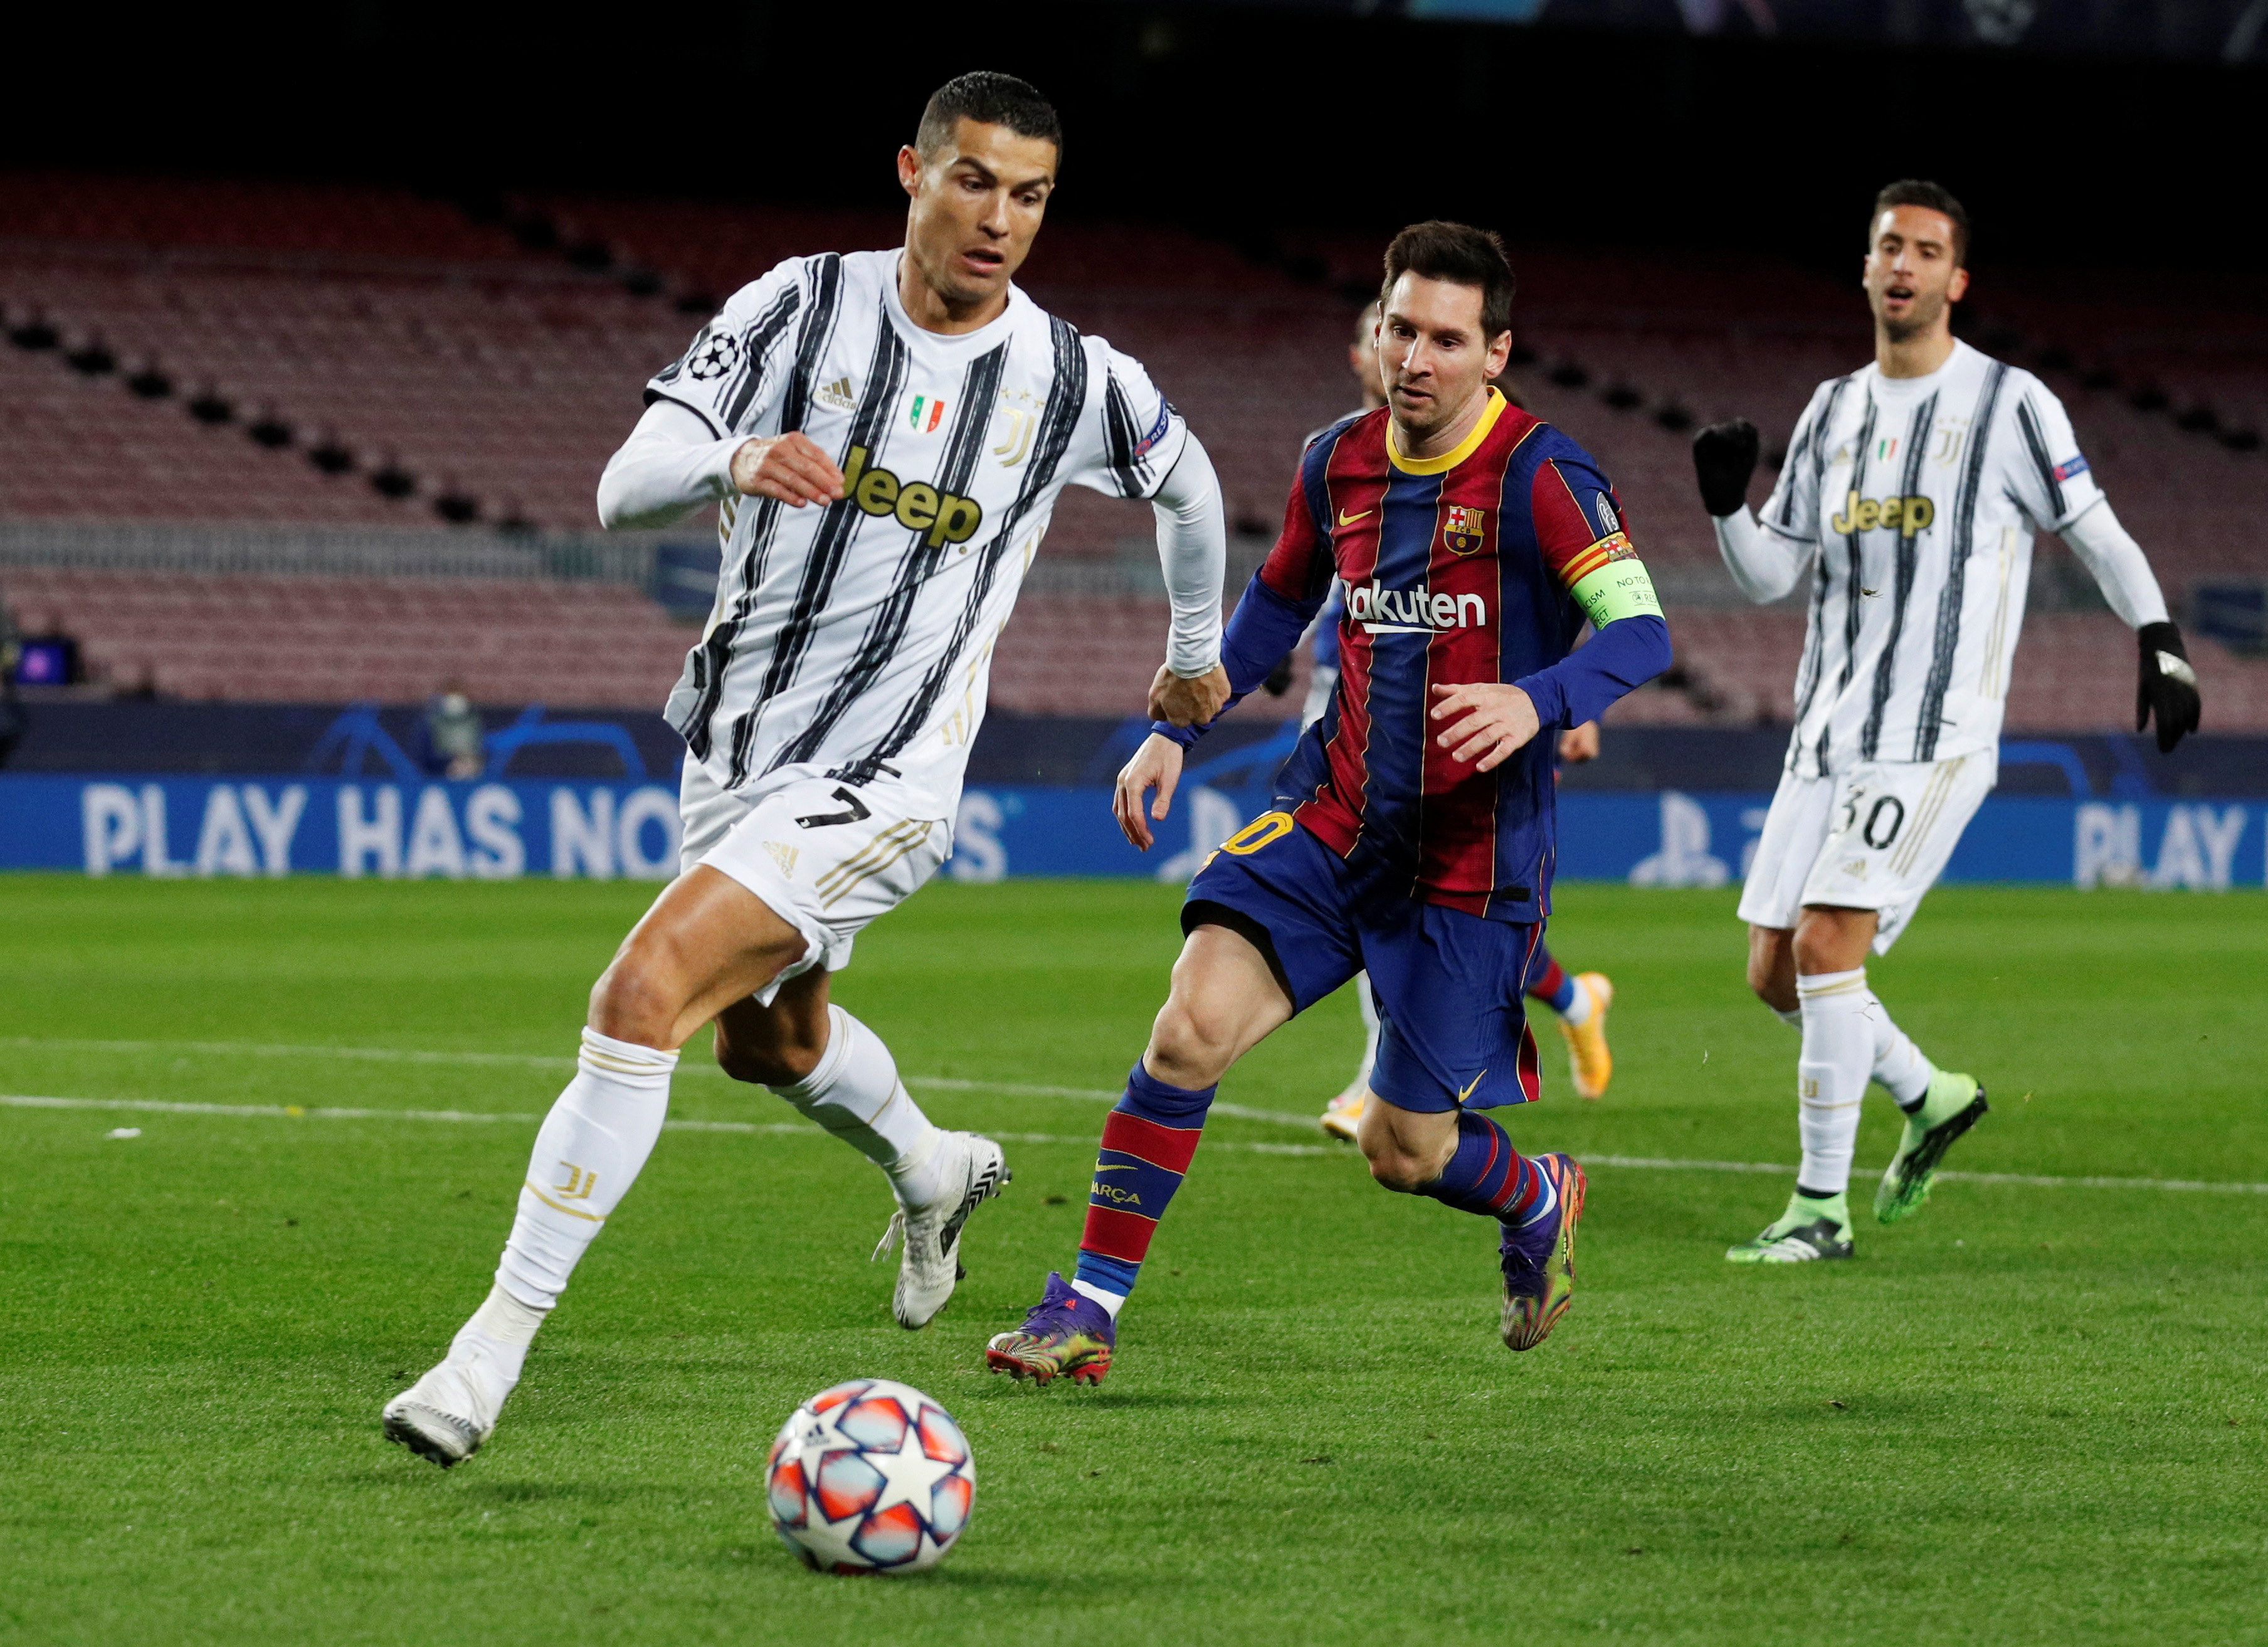 For Messi vs Ronaldo, read U.S. vs Saudi Arabia – a new twist in a